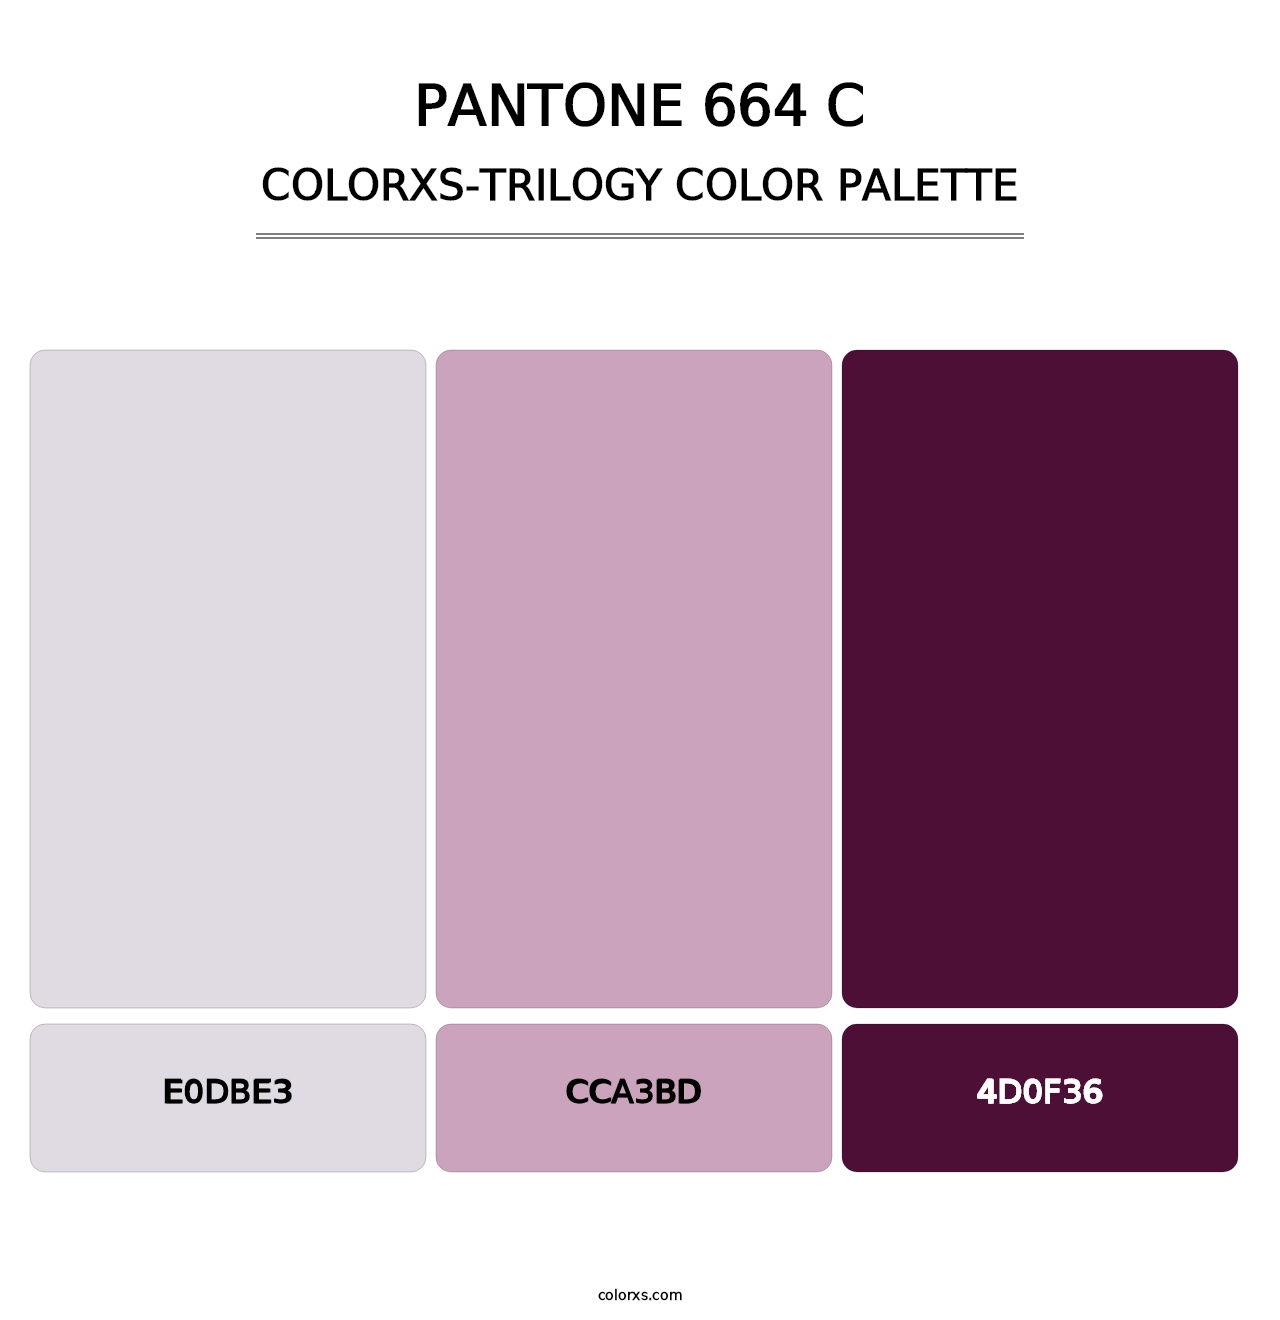 PANTONE 664 C - Colorxs Trilogy Palette